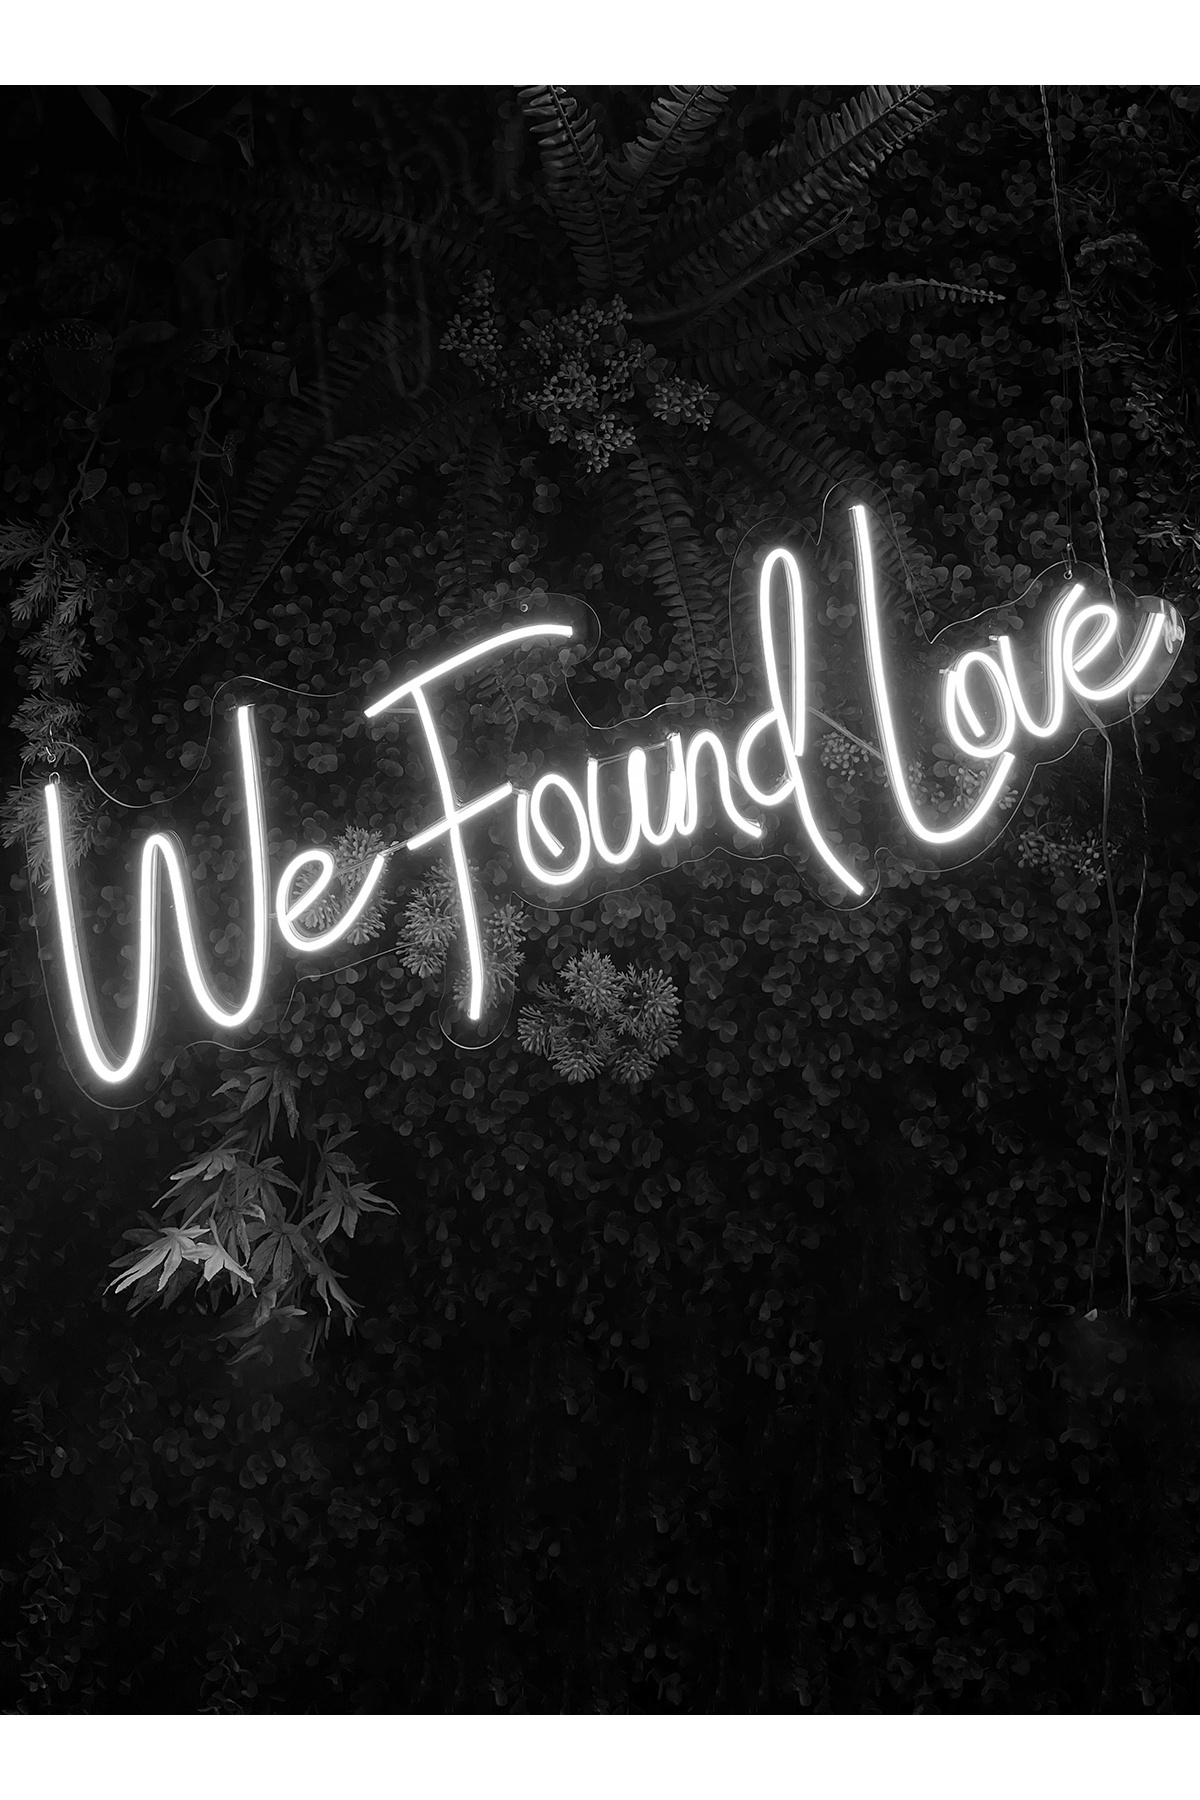 We Found Love Yazılı Neon Led Işıklı Tablo Düğün ve Kutlama Duvar Dekorasyon Ürünleri